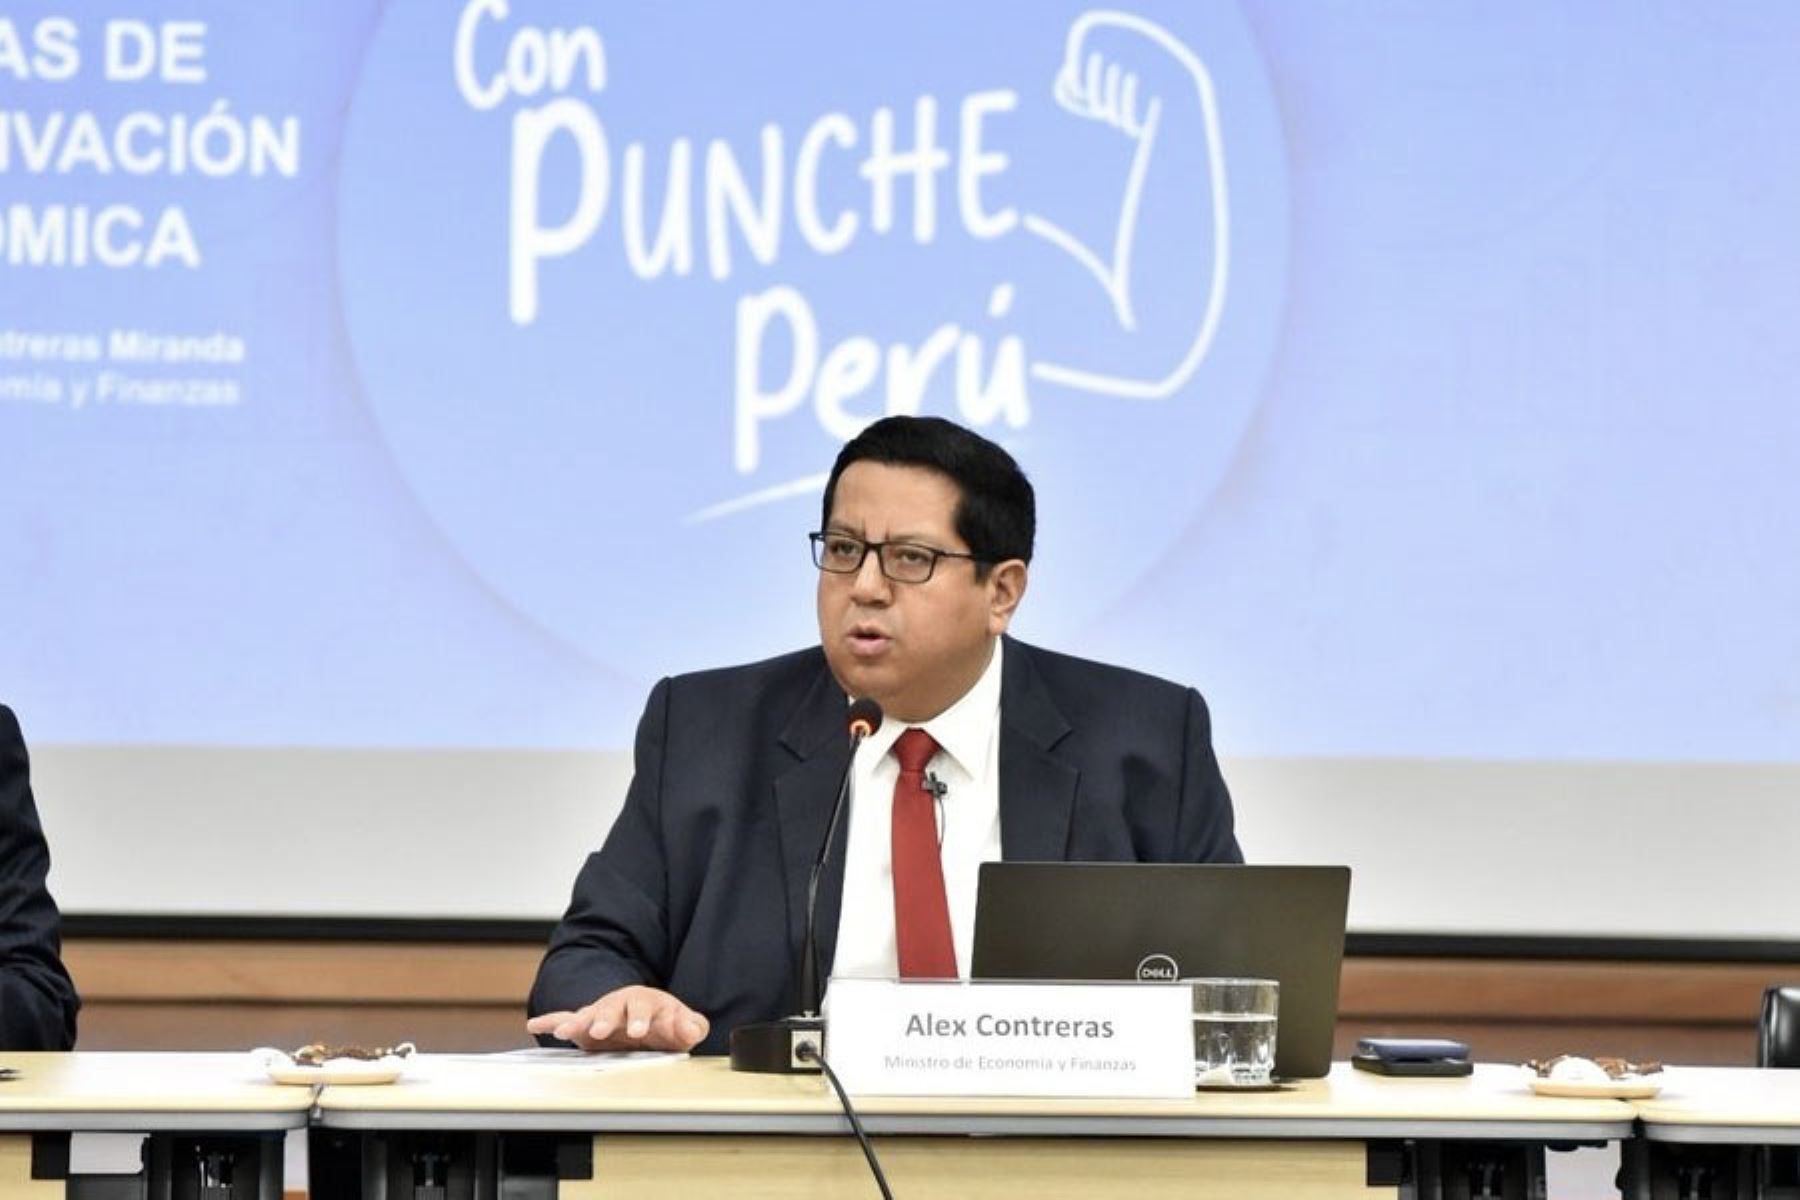 El titular del MEF, Álex Contreras, brindó mayores del plan 'Con Punche Perú' en conferencia de prensa.